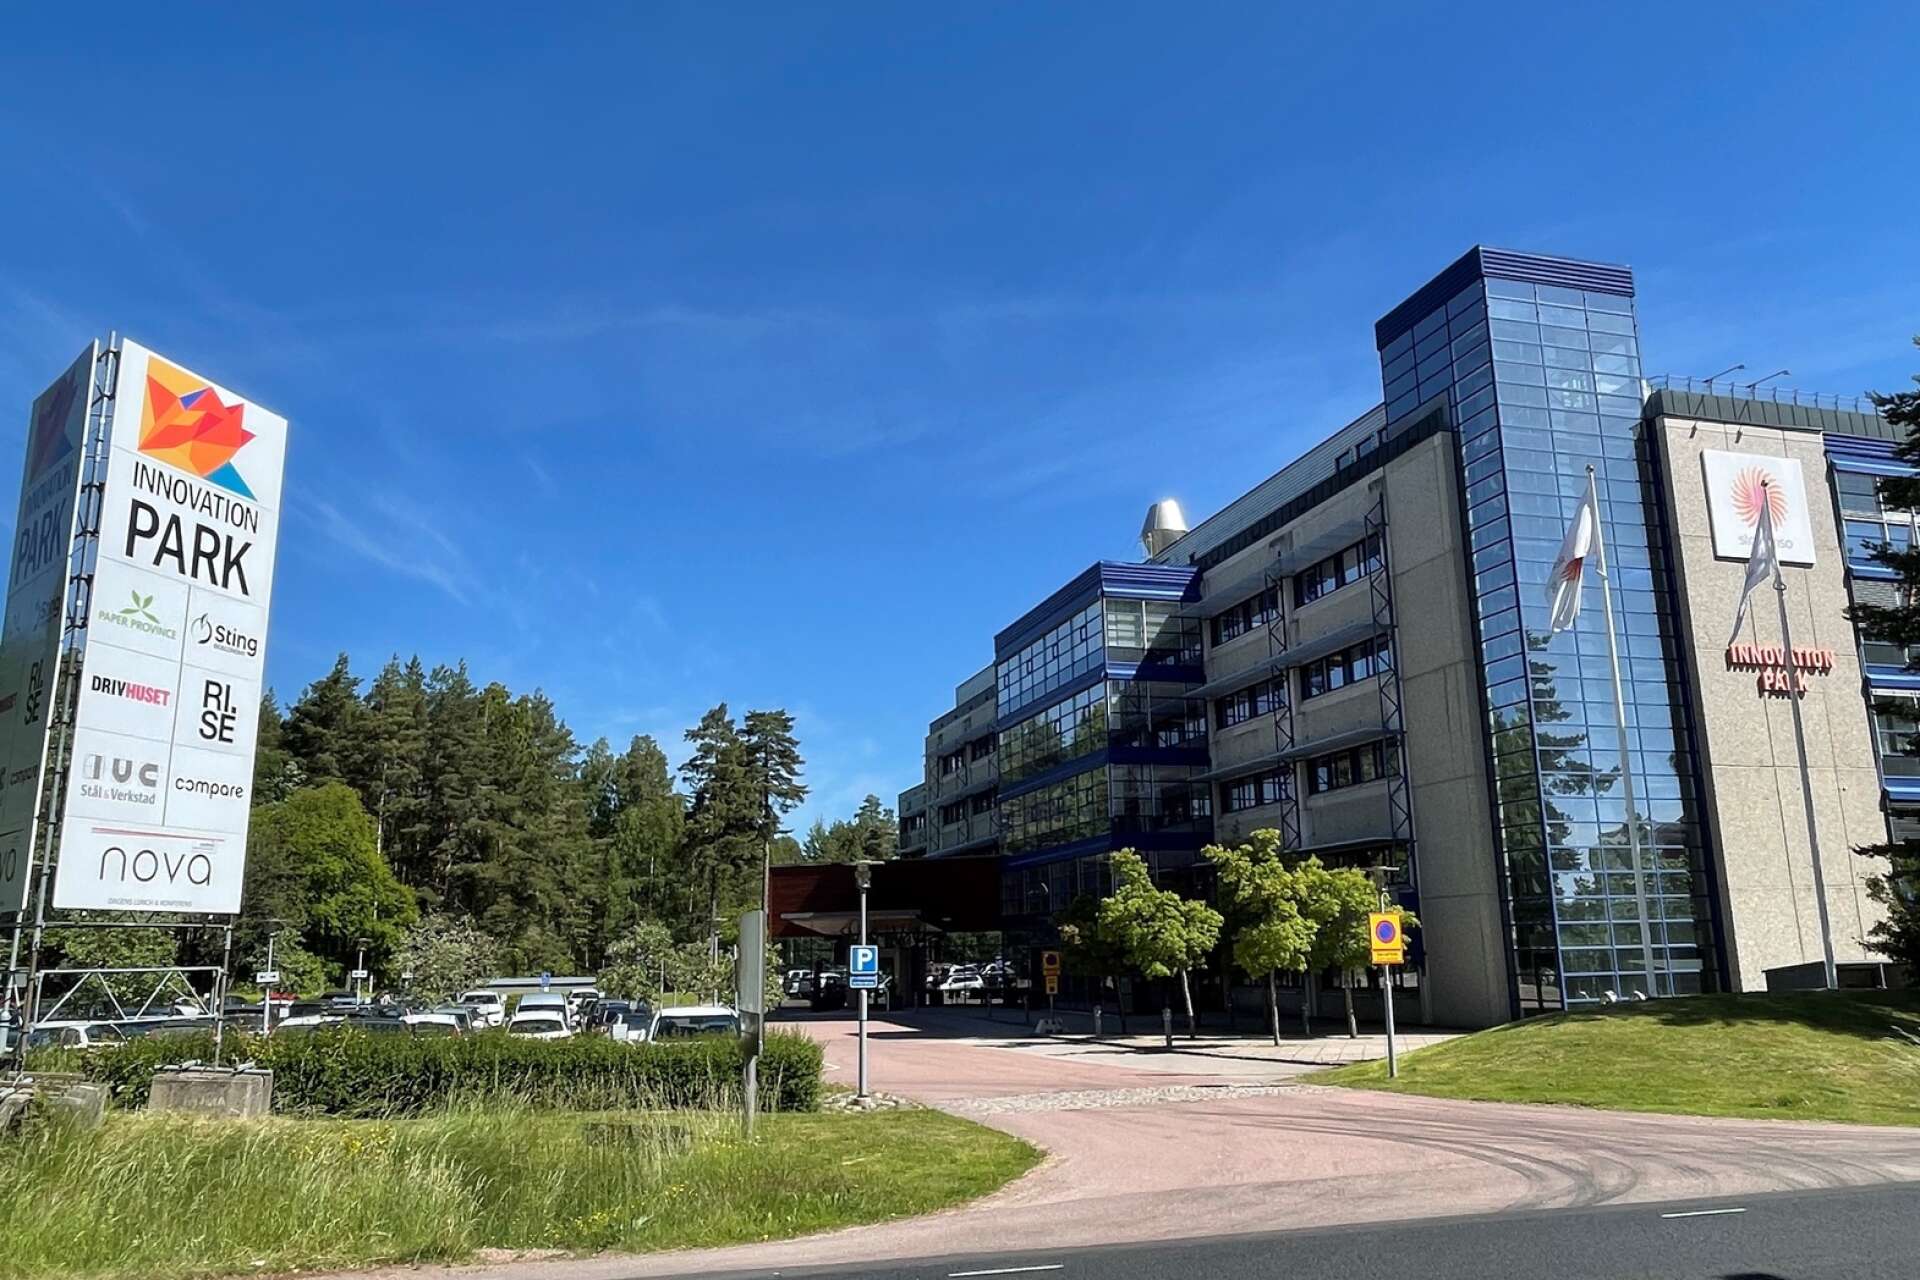 Innovation park på Kronoparken, Karlstad, är en viktig mötesplats för entreprenörer och olika aktörer som stöttar innovationer.